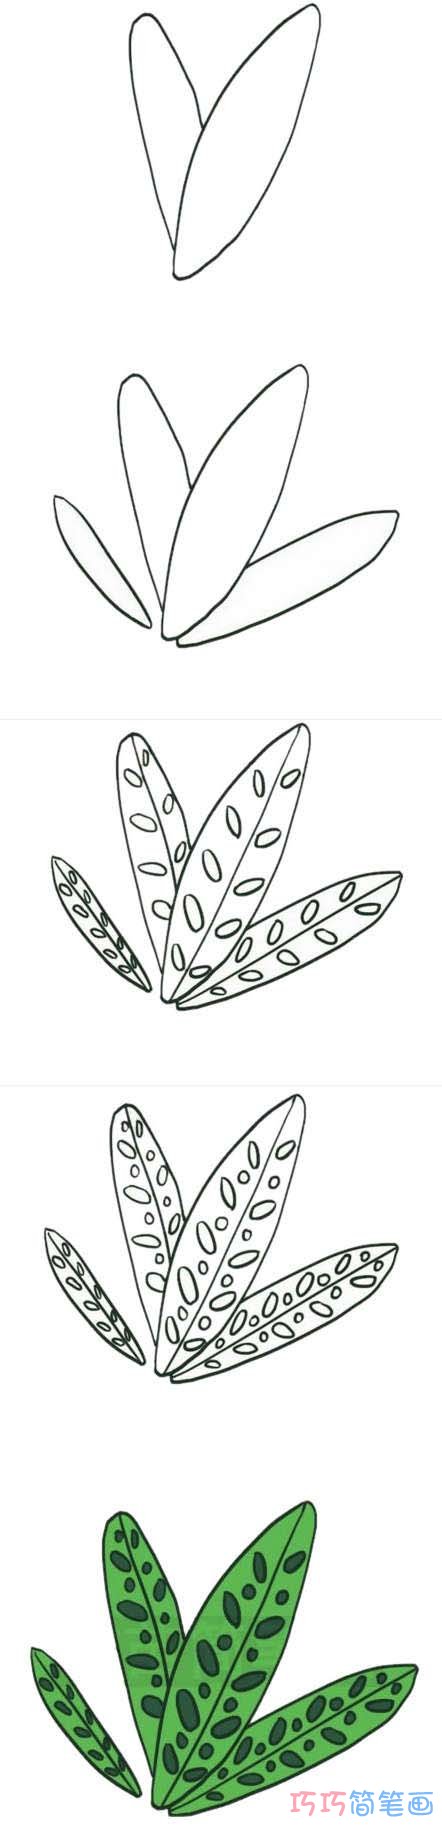 竹芋叶子的画法步骤图带颜色 竹芋简笔画图片